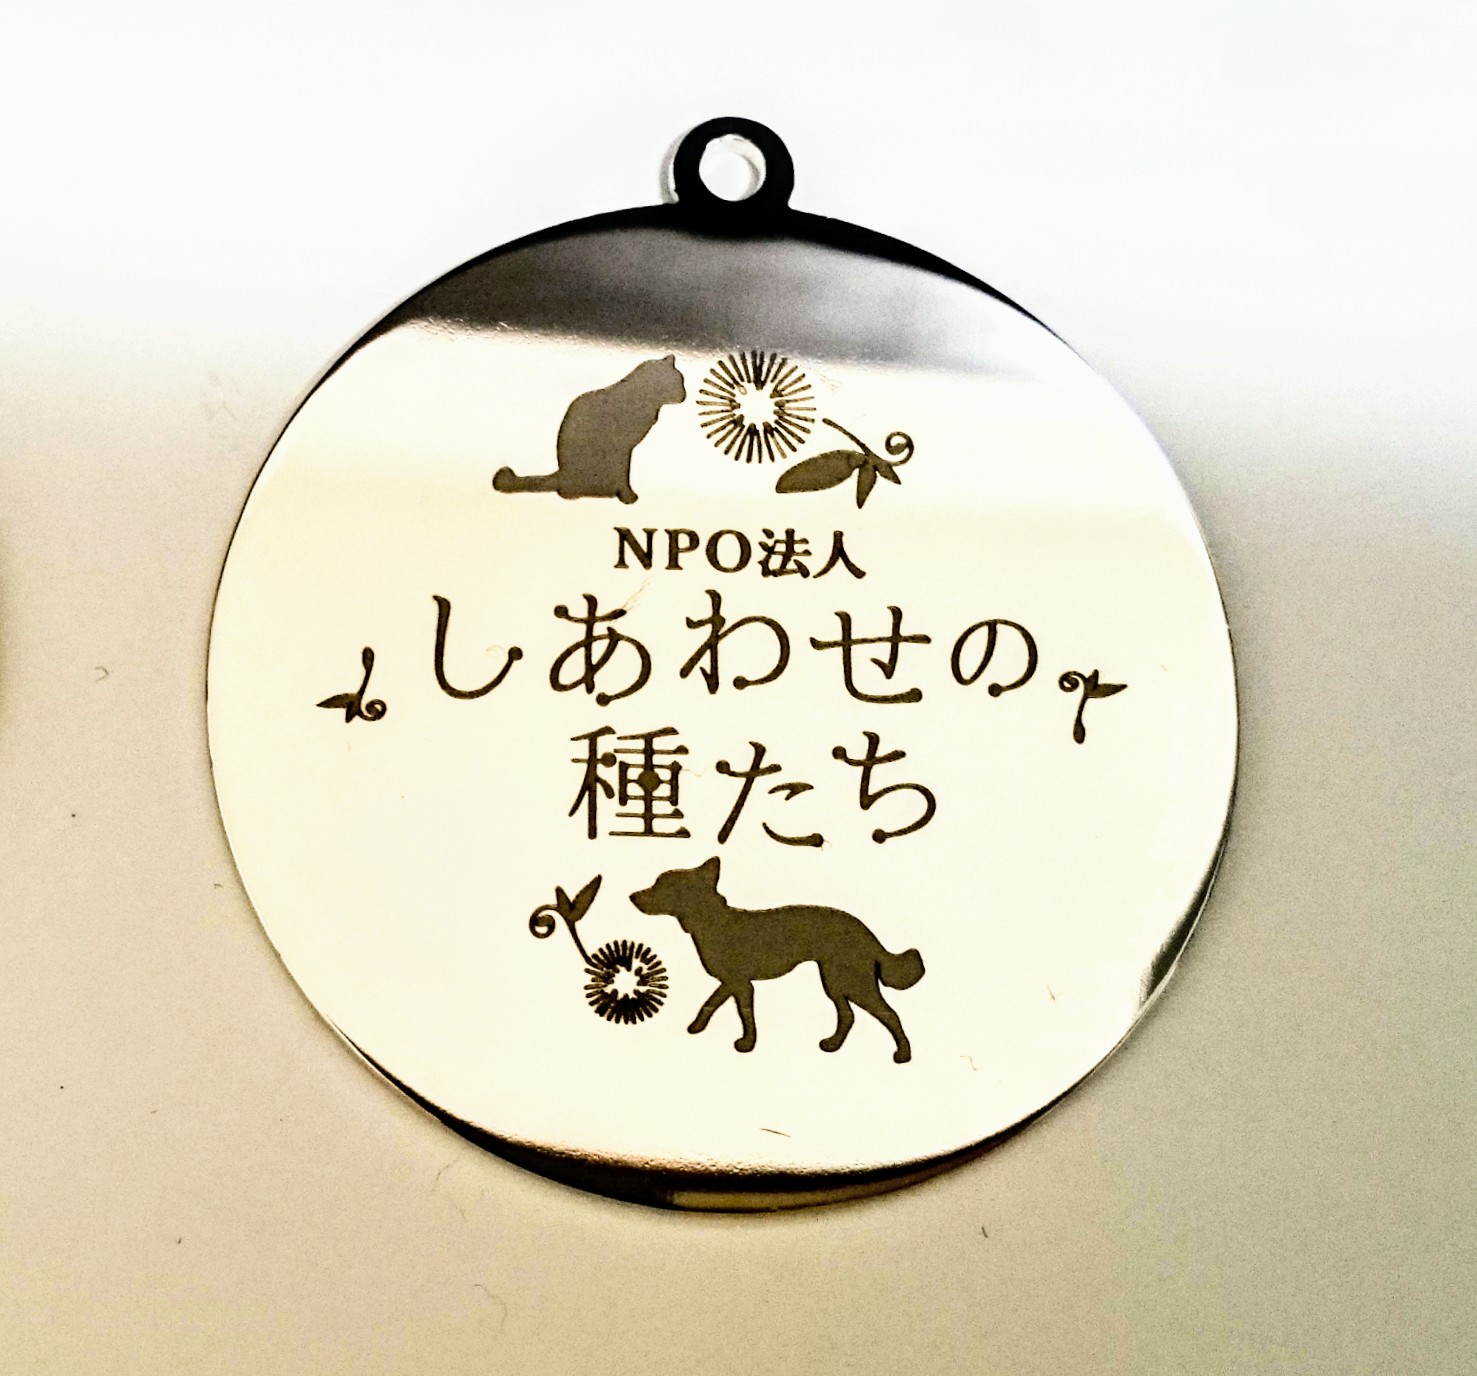 動物愛護団体様ロゴをレーザー刻印したペット首輪用プレートの製作